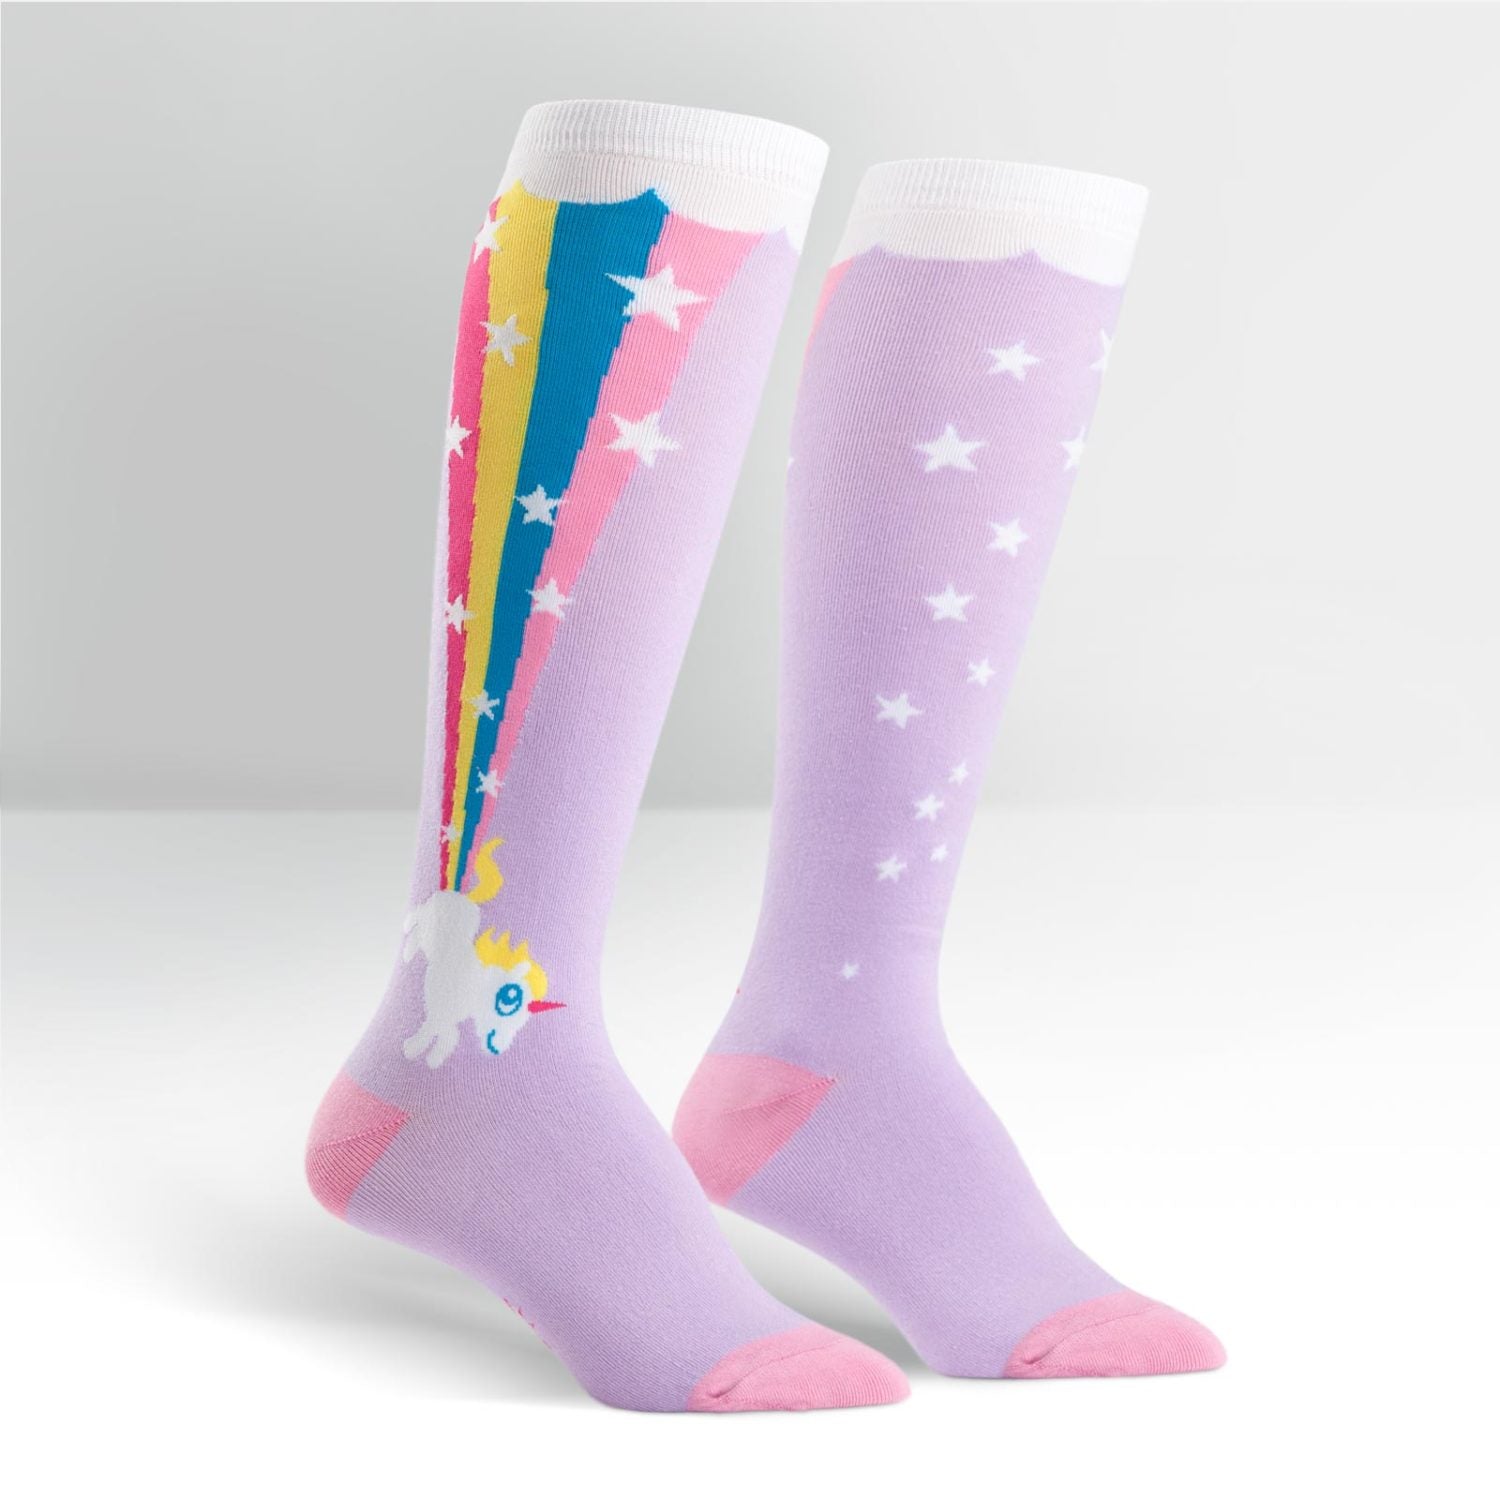 Rainbow Blast Knee High Socks - The Sockery